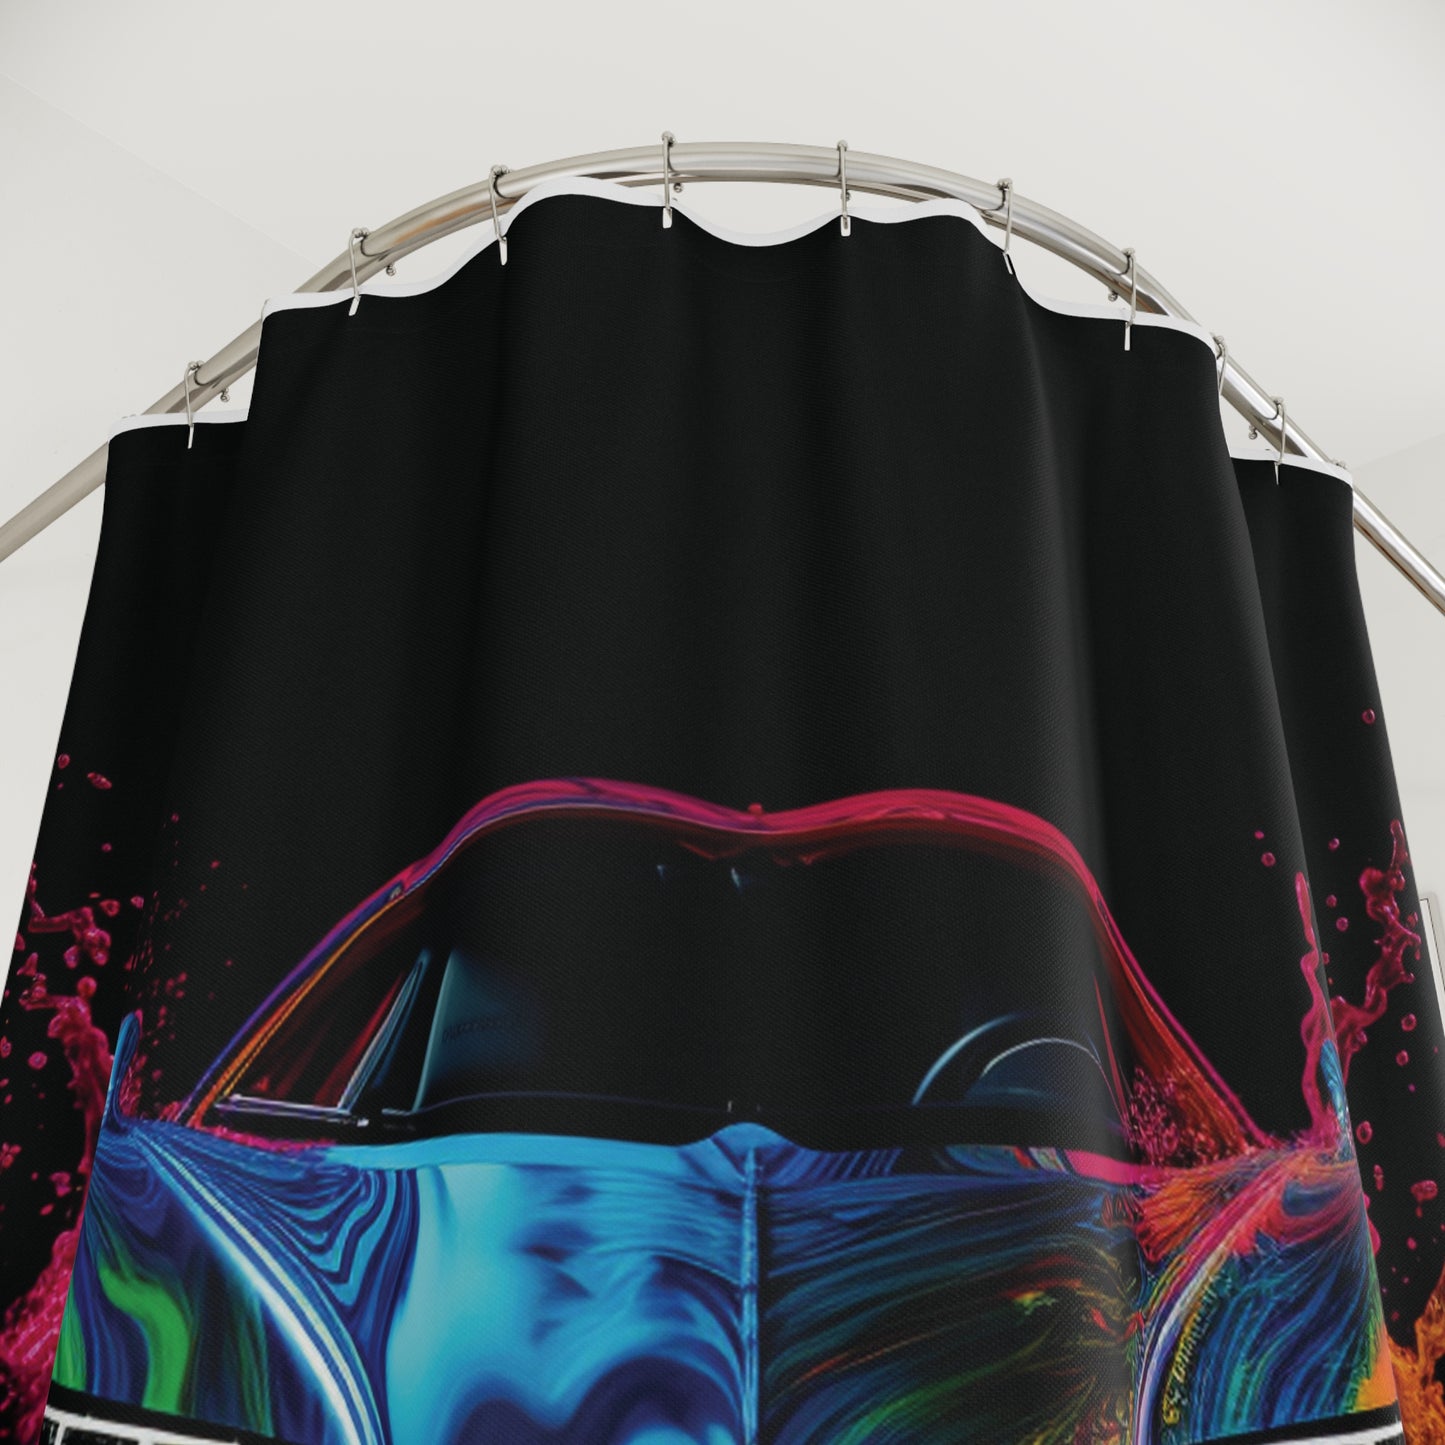 Polyester Shower Curtain Bugatti Water 4